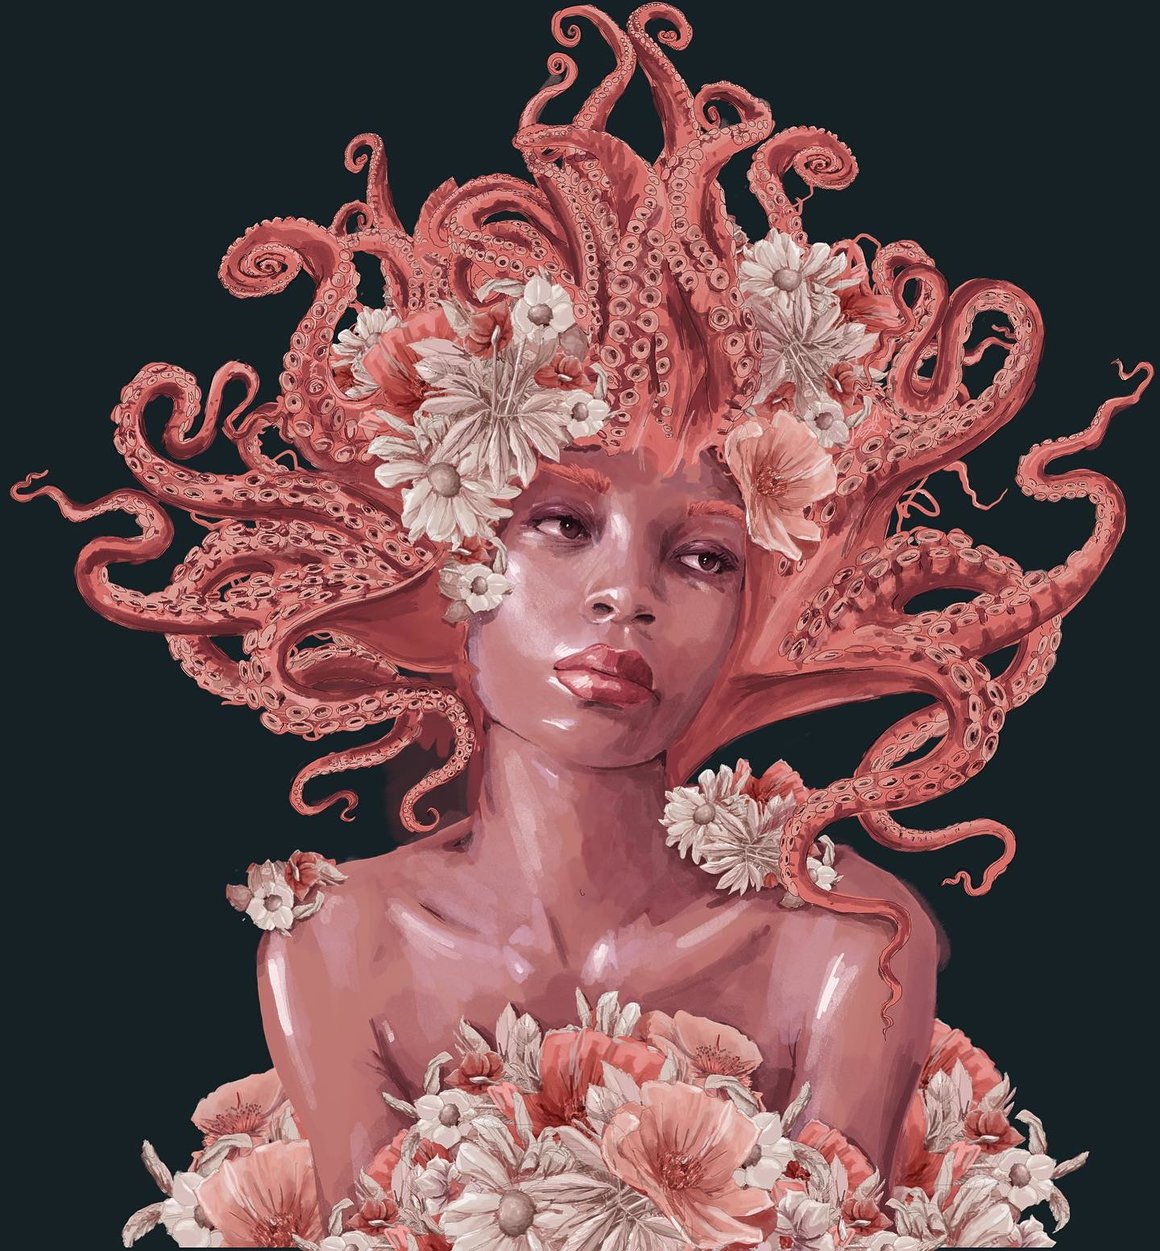 Une femme à la peau rouge et aux cheveux de tentacules de pieuvre, est entourée de fleurs.